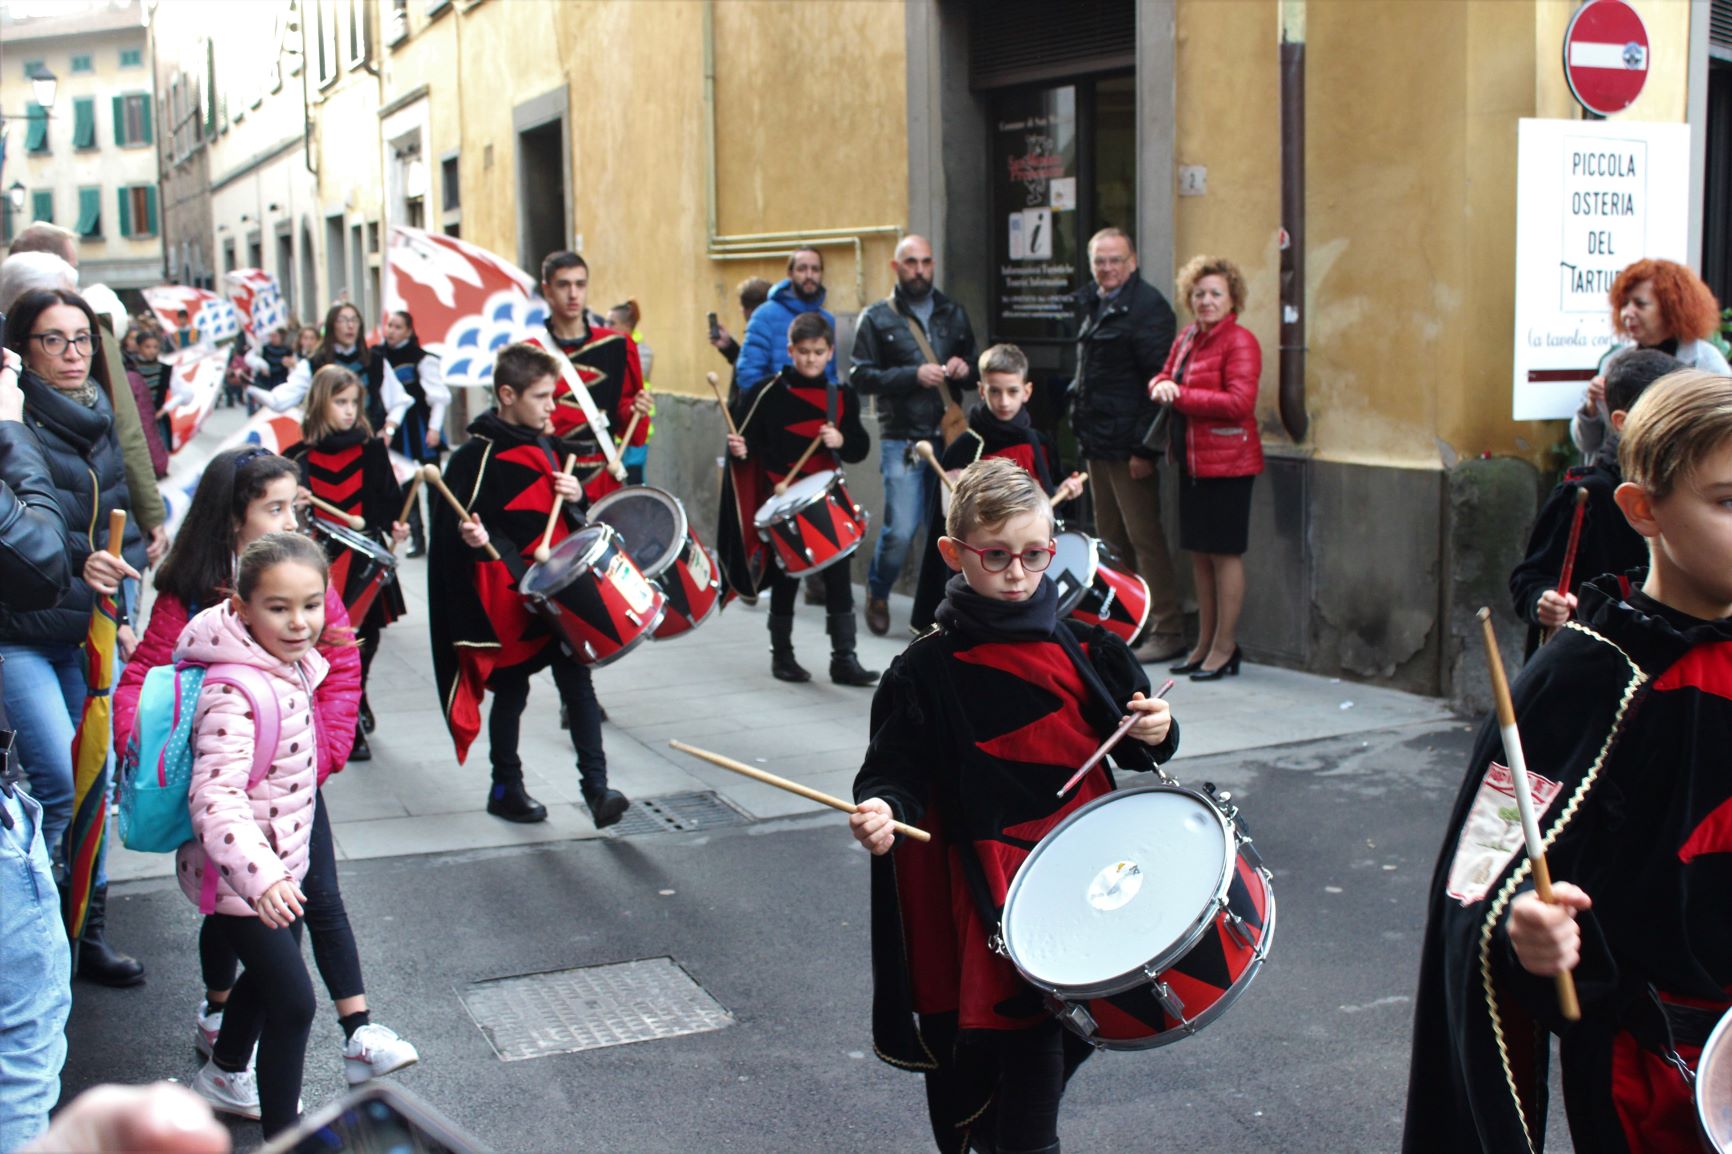 Local children participate in a parade in San Miniato, home to the annual San Miniato Truffle Market.